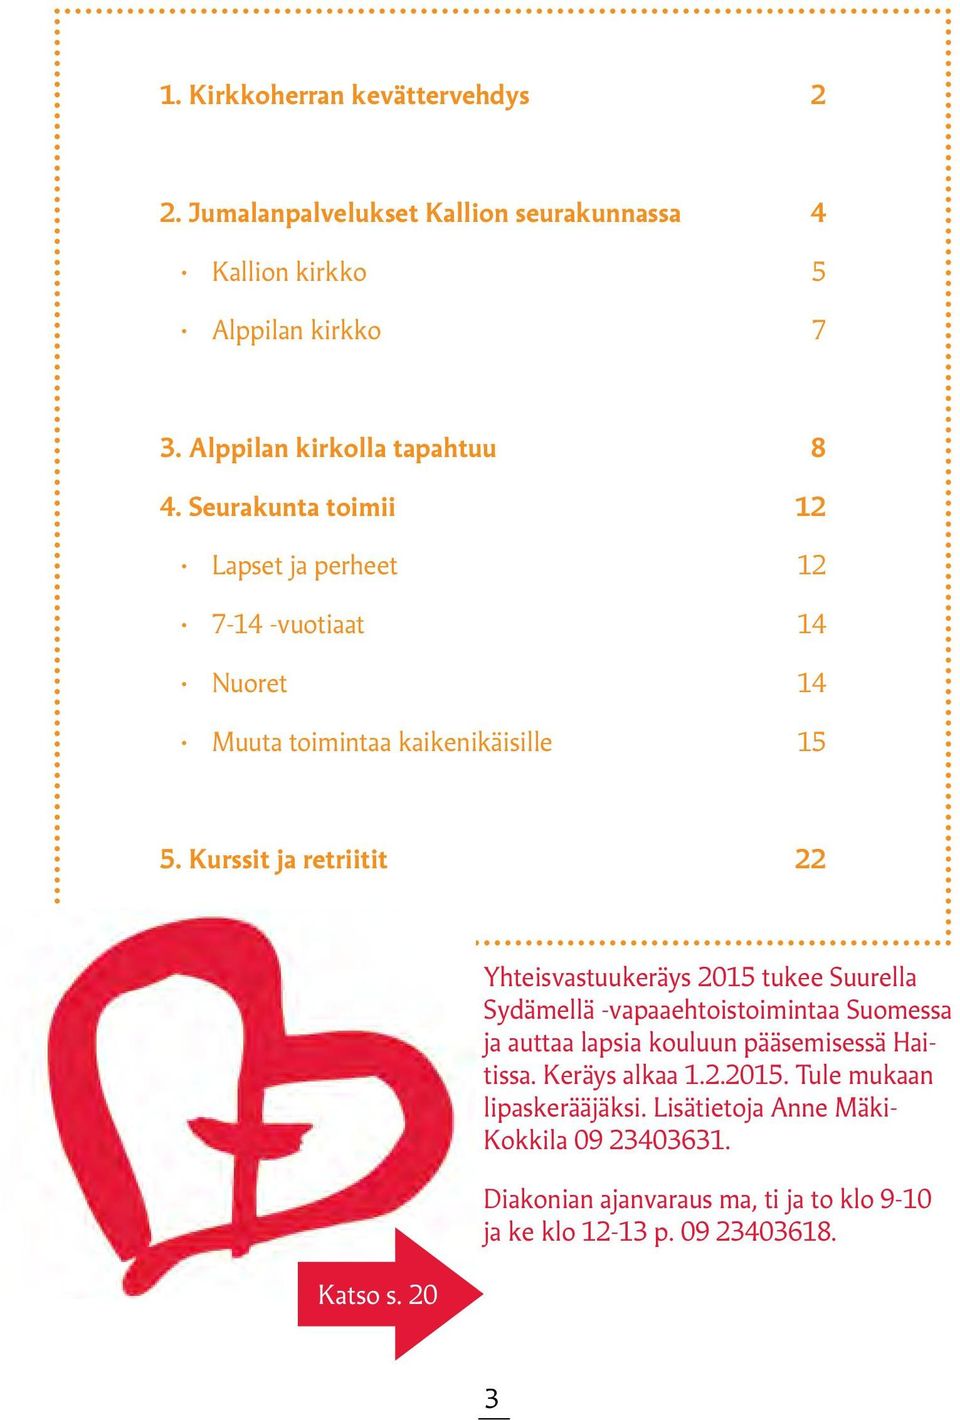 20 Yhteisvastuukeräys 2015 tukee Suurella Sydämellä -vapaaehtoistoimintaa Suomessa ja auttaa lapsia kouluun pääsemisessä Haitissa. Keräys alkaa 1.2.2015. Tule mukaan lipaskerääjäksi.